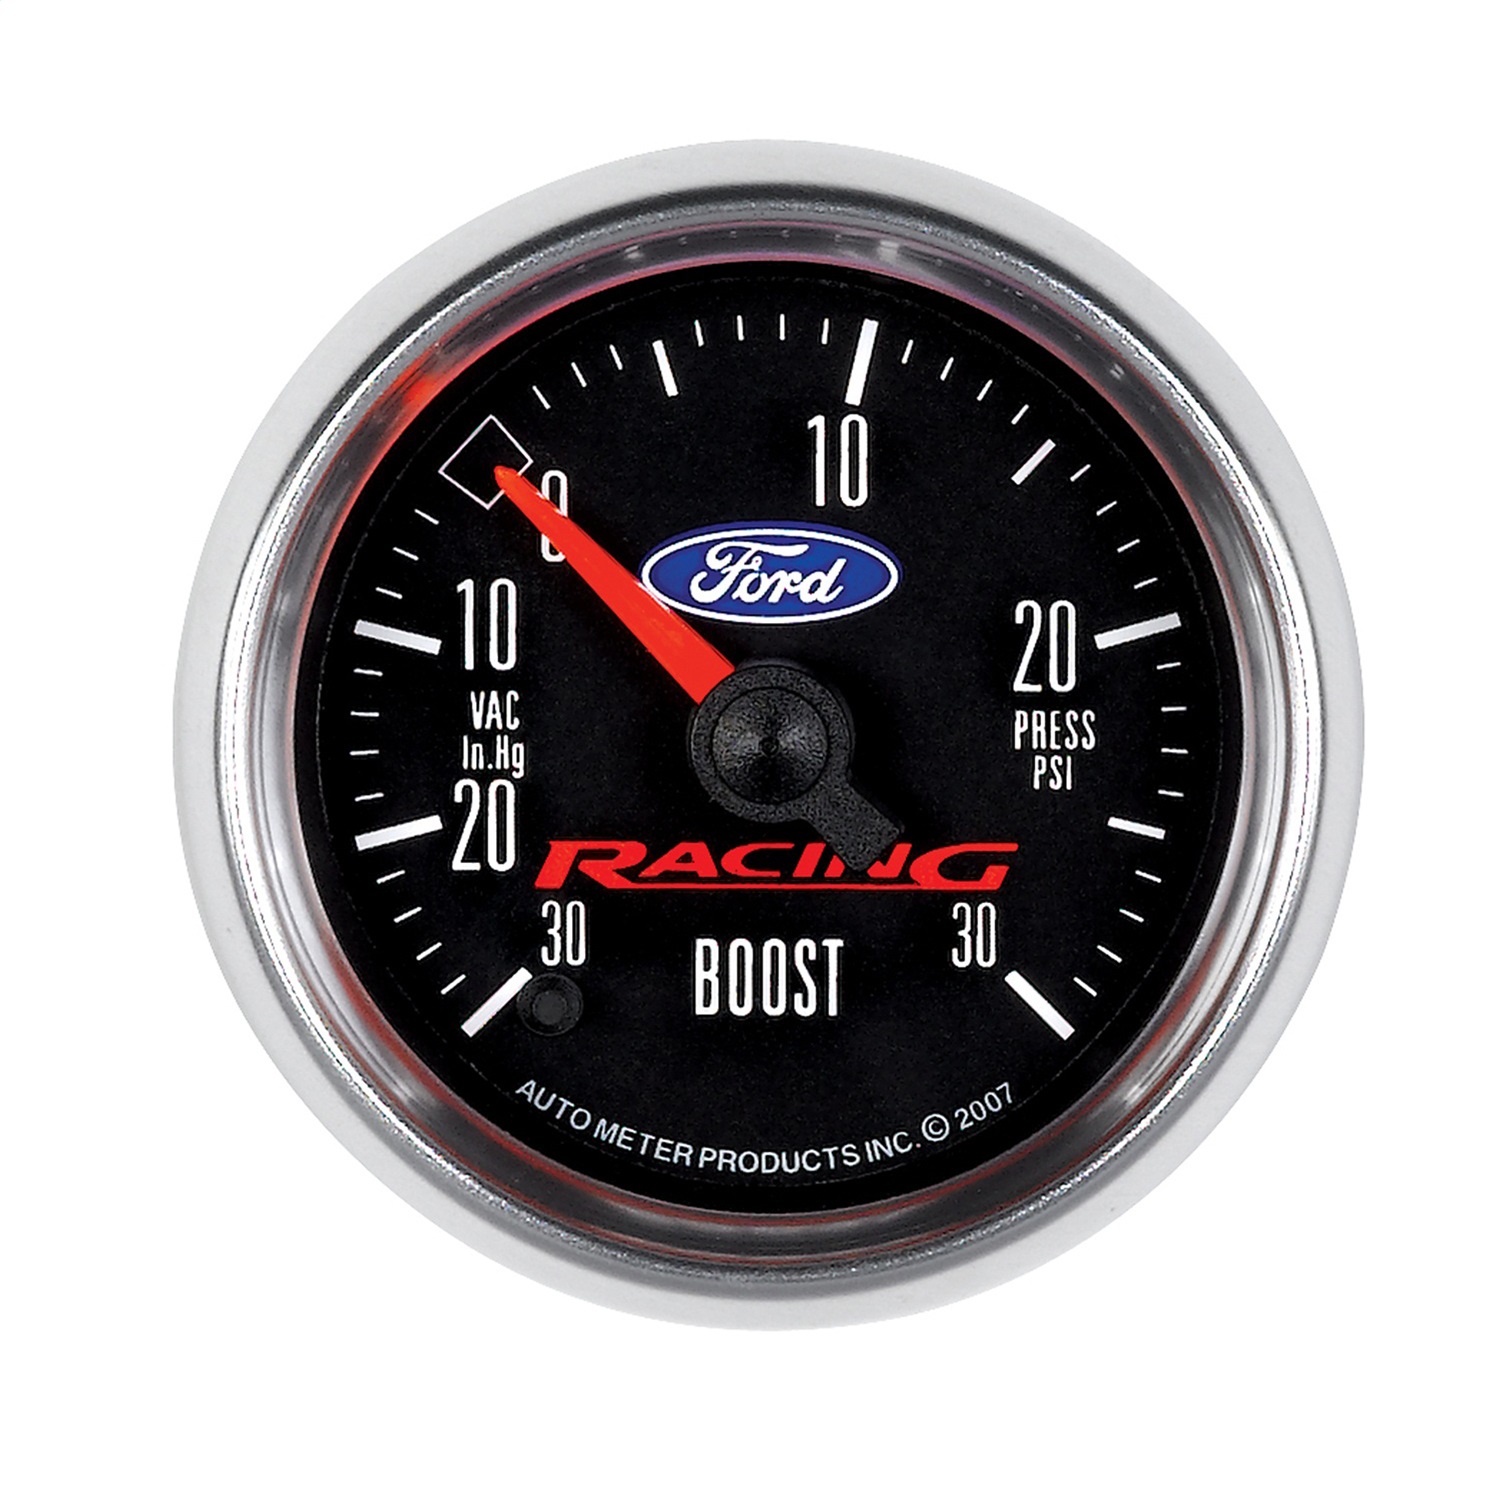 AutoMeter 880074 Ford Racing Boost-Vac/Pressure Gauge